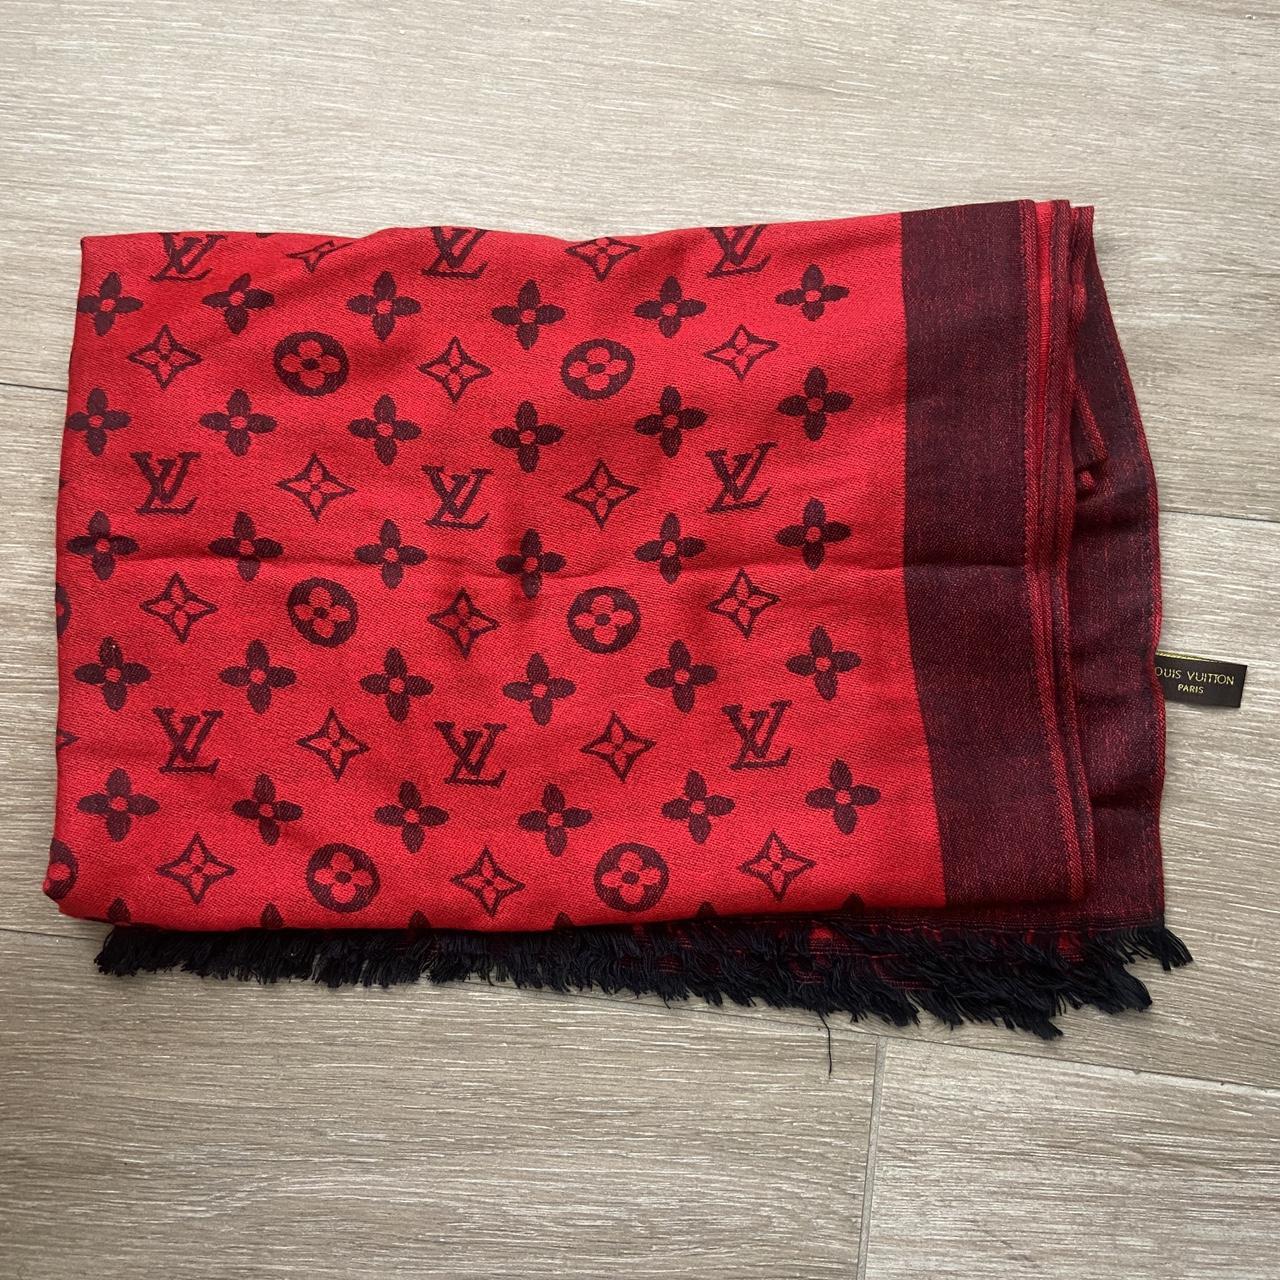 Silk scarf Louis Vuitton Red in Silk - 32830479